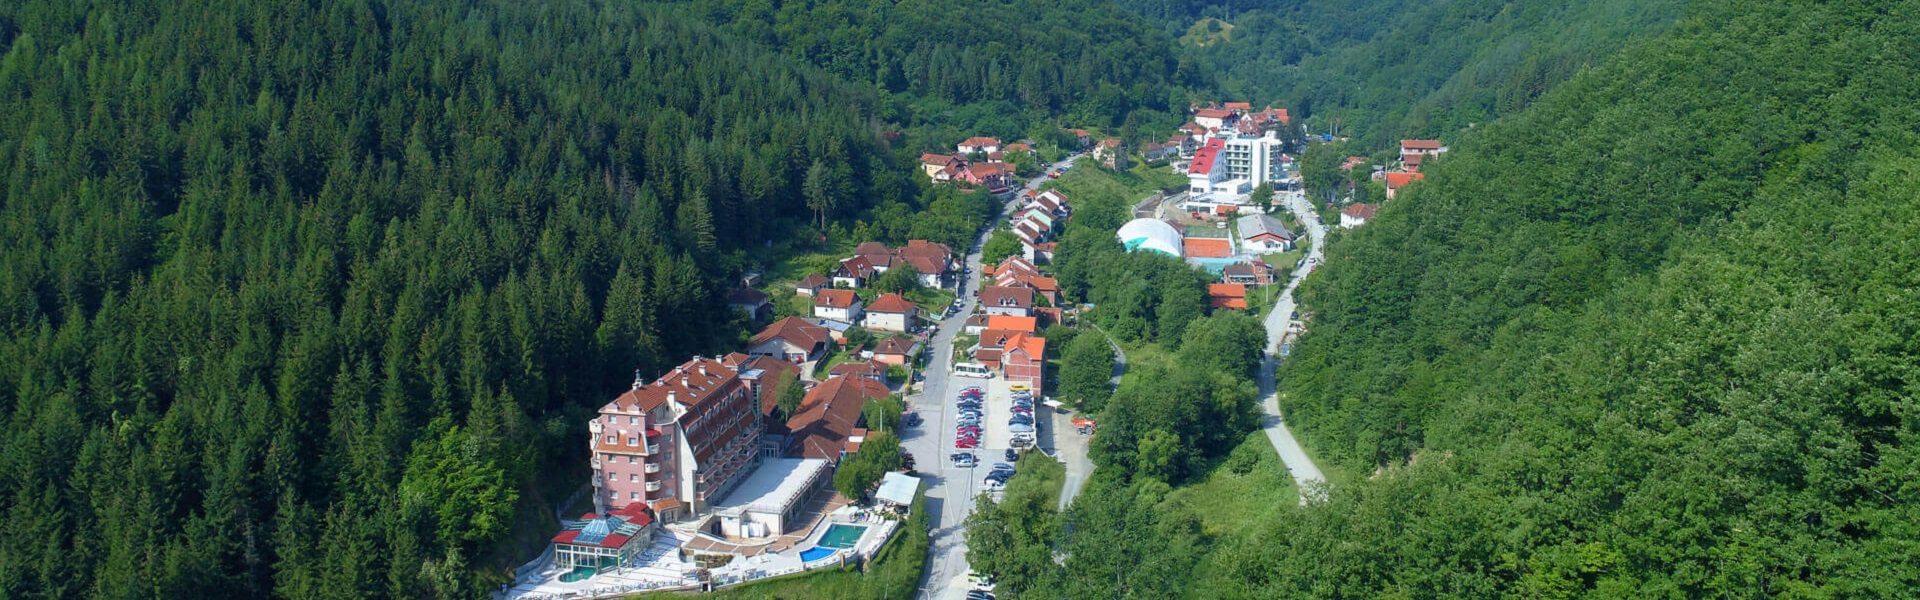 Otkup akumulatora Ecomet | Lukovska banja u Srbiji